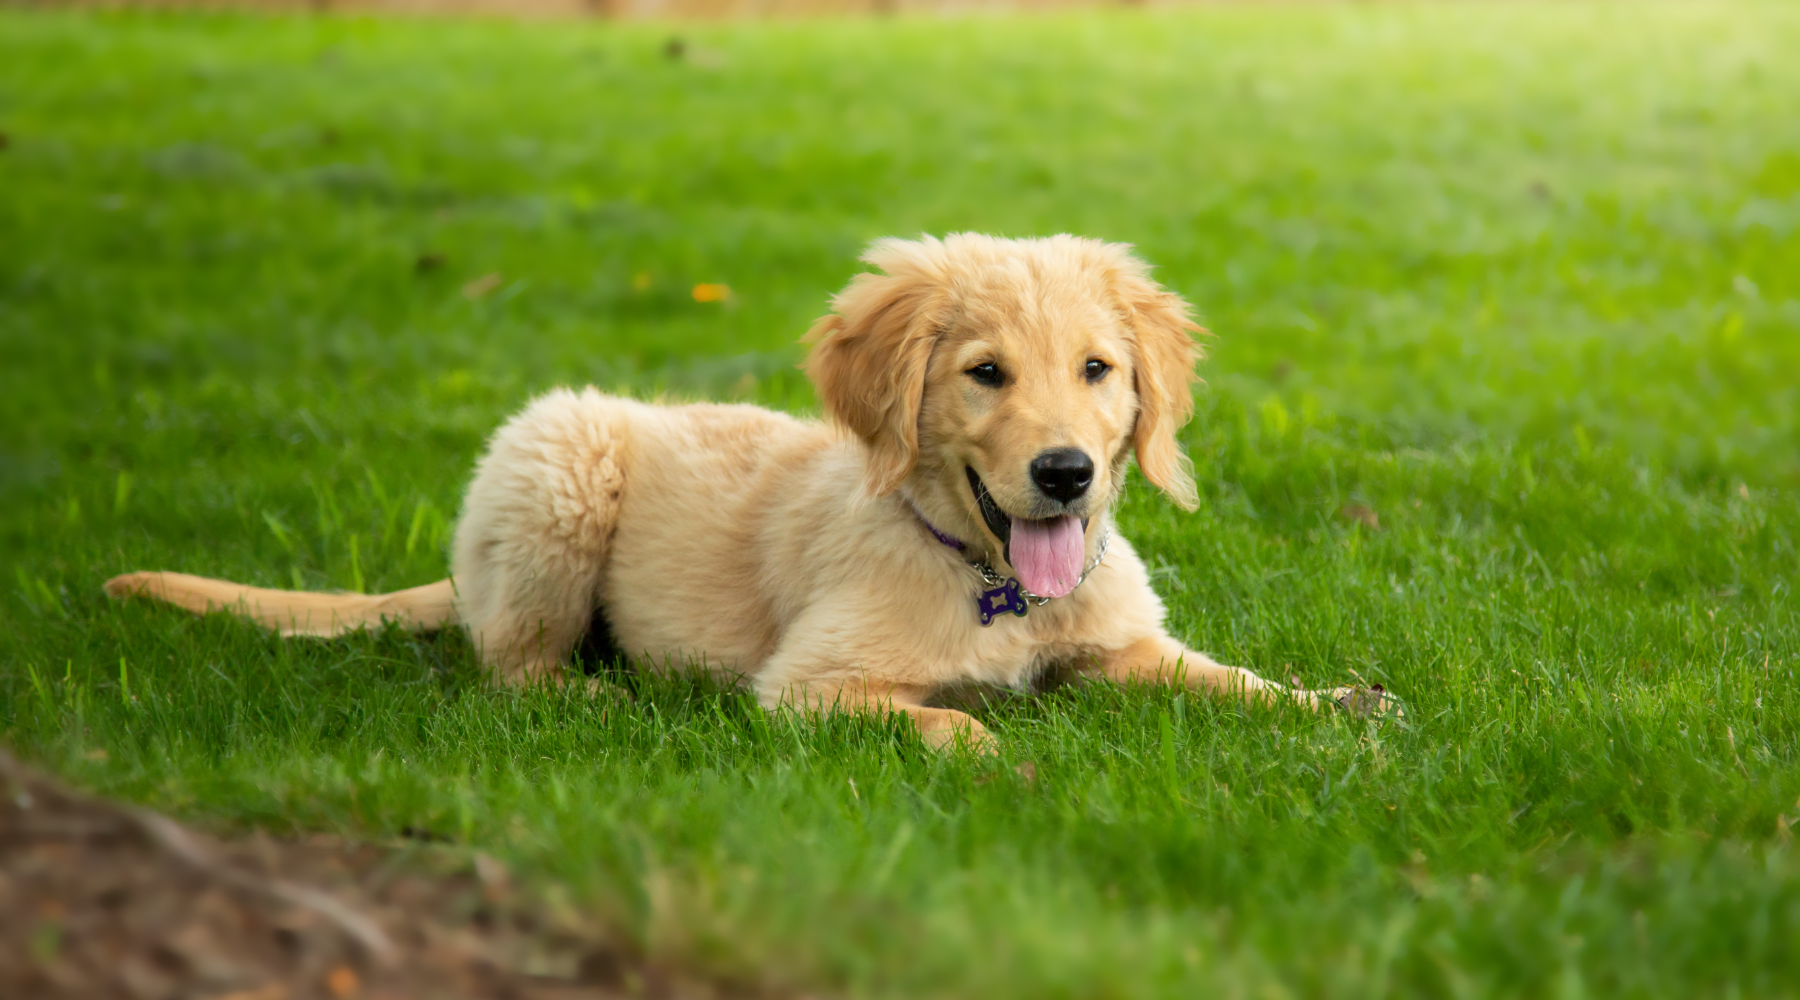 Golden Retriever puppy lying on grass